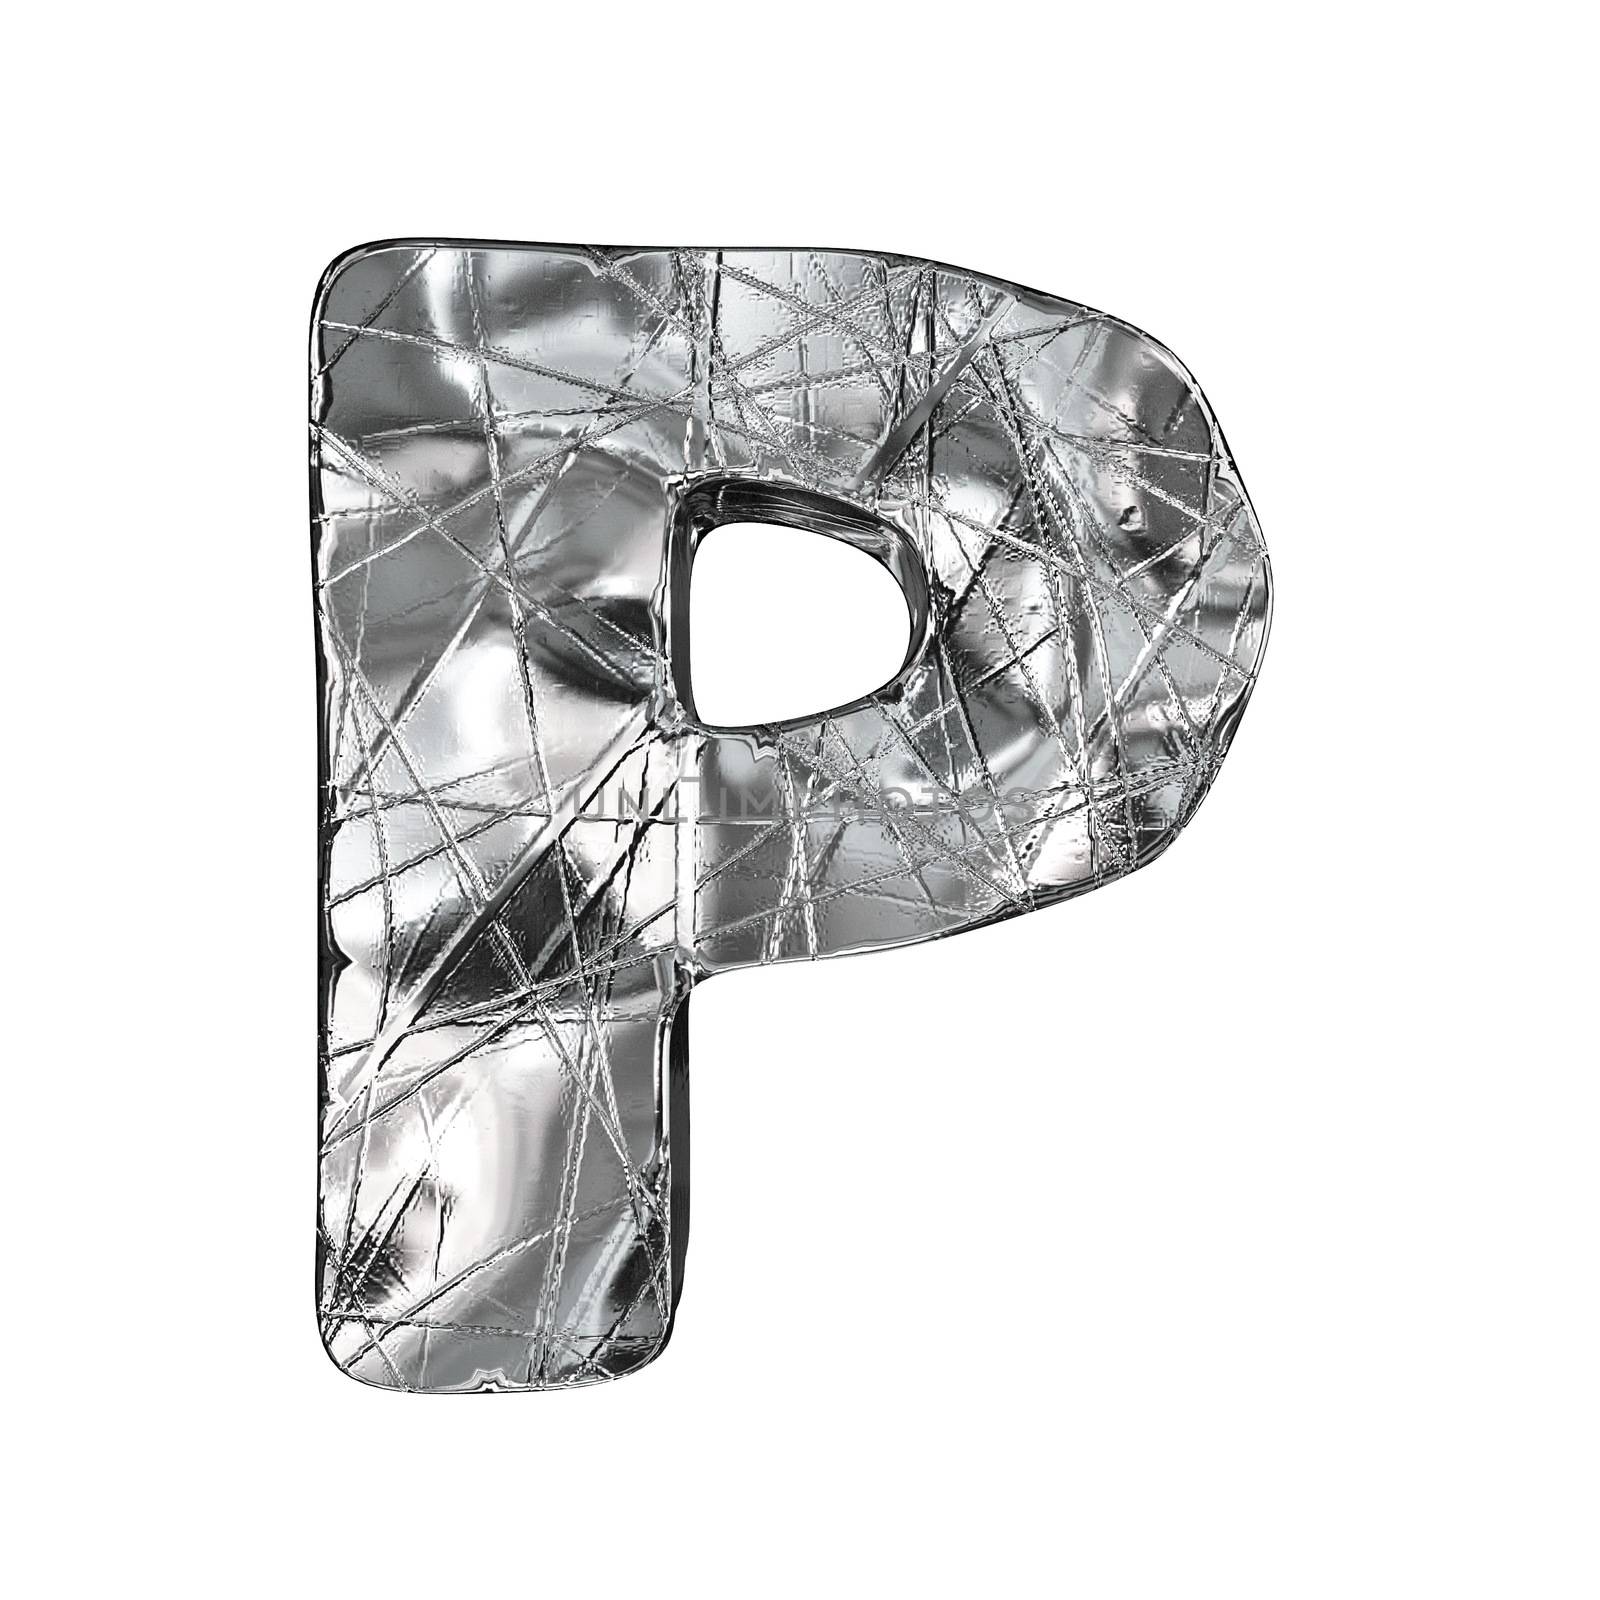 Grunge aluminium foil font letter P 3D render illustration isolated on white background